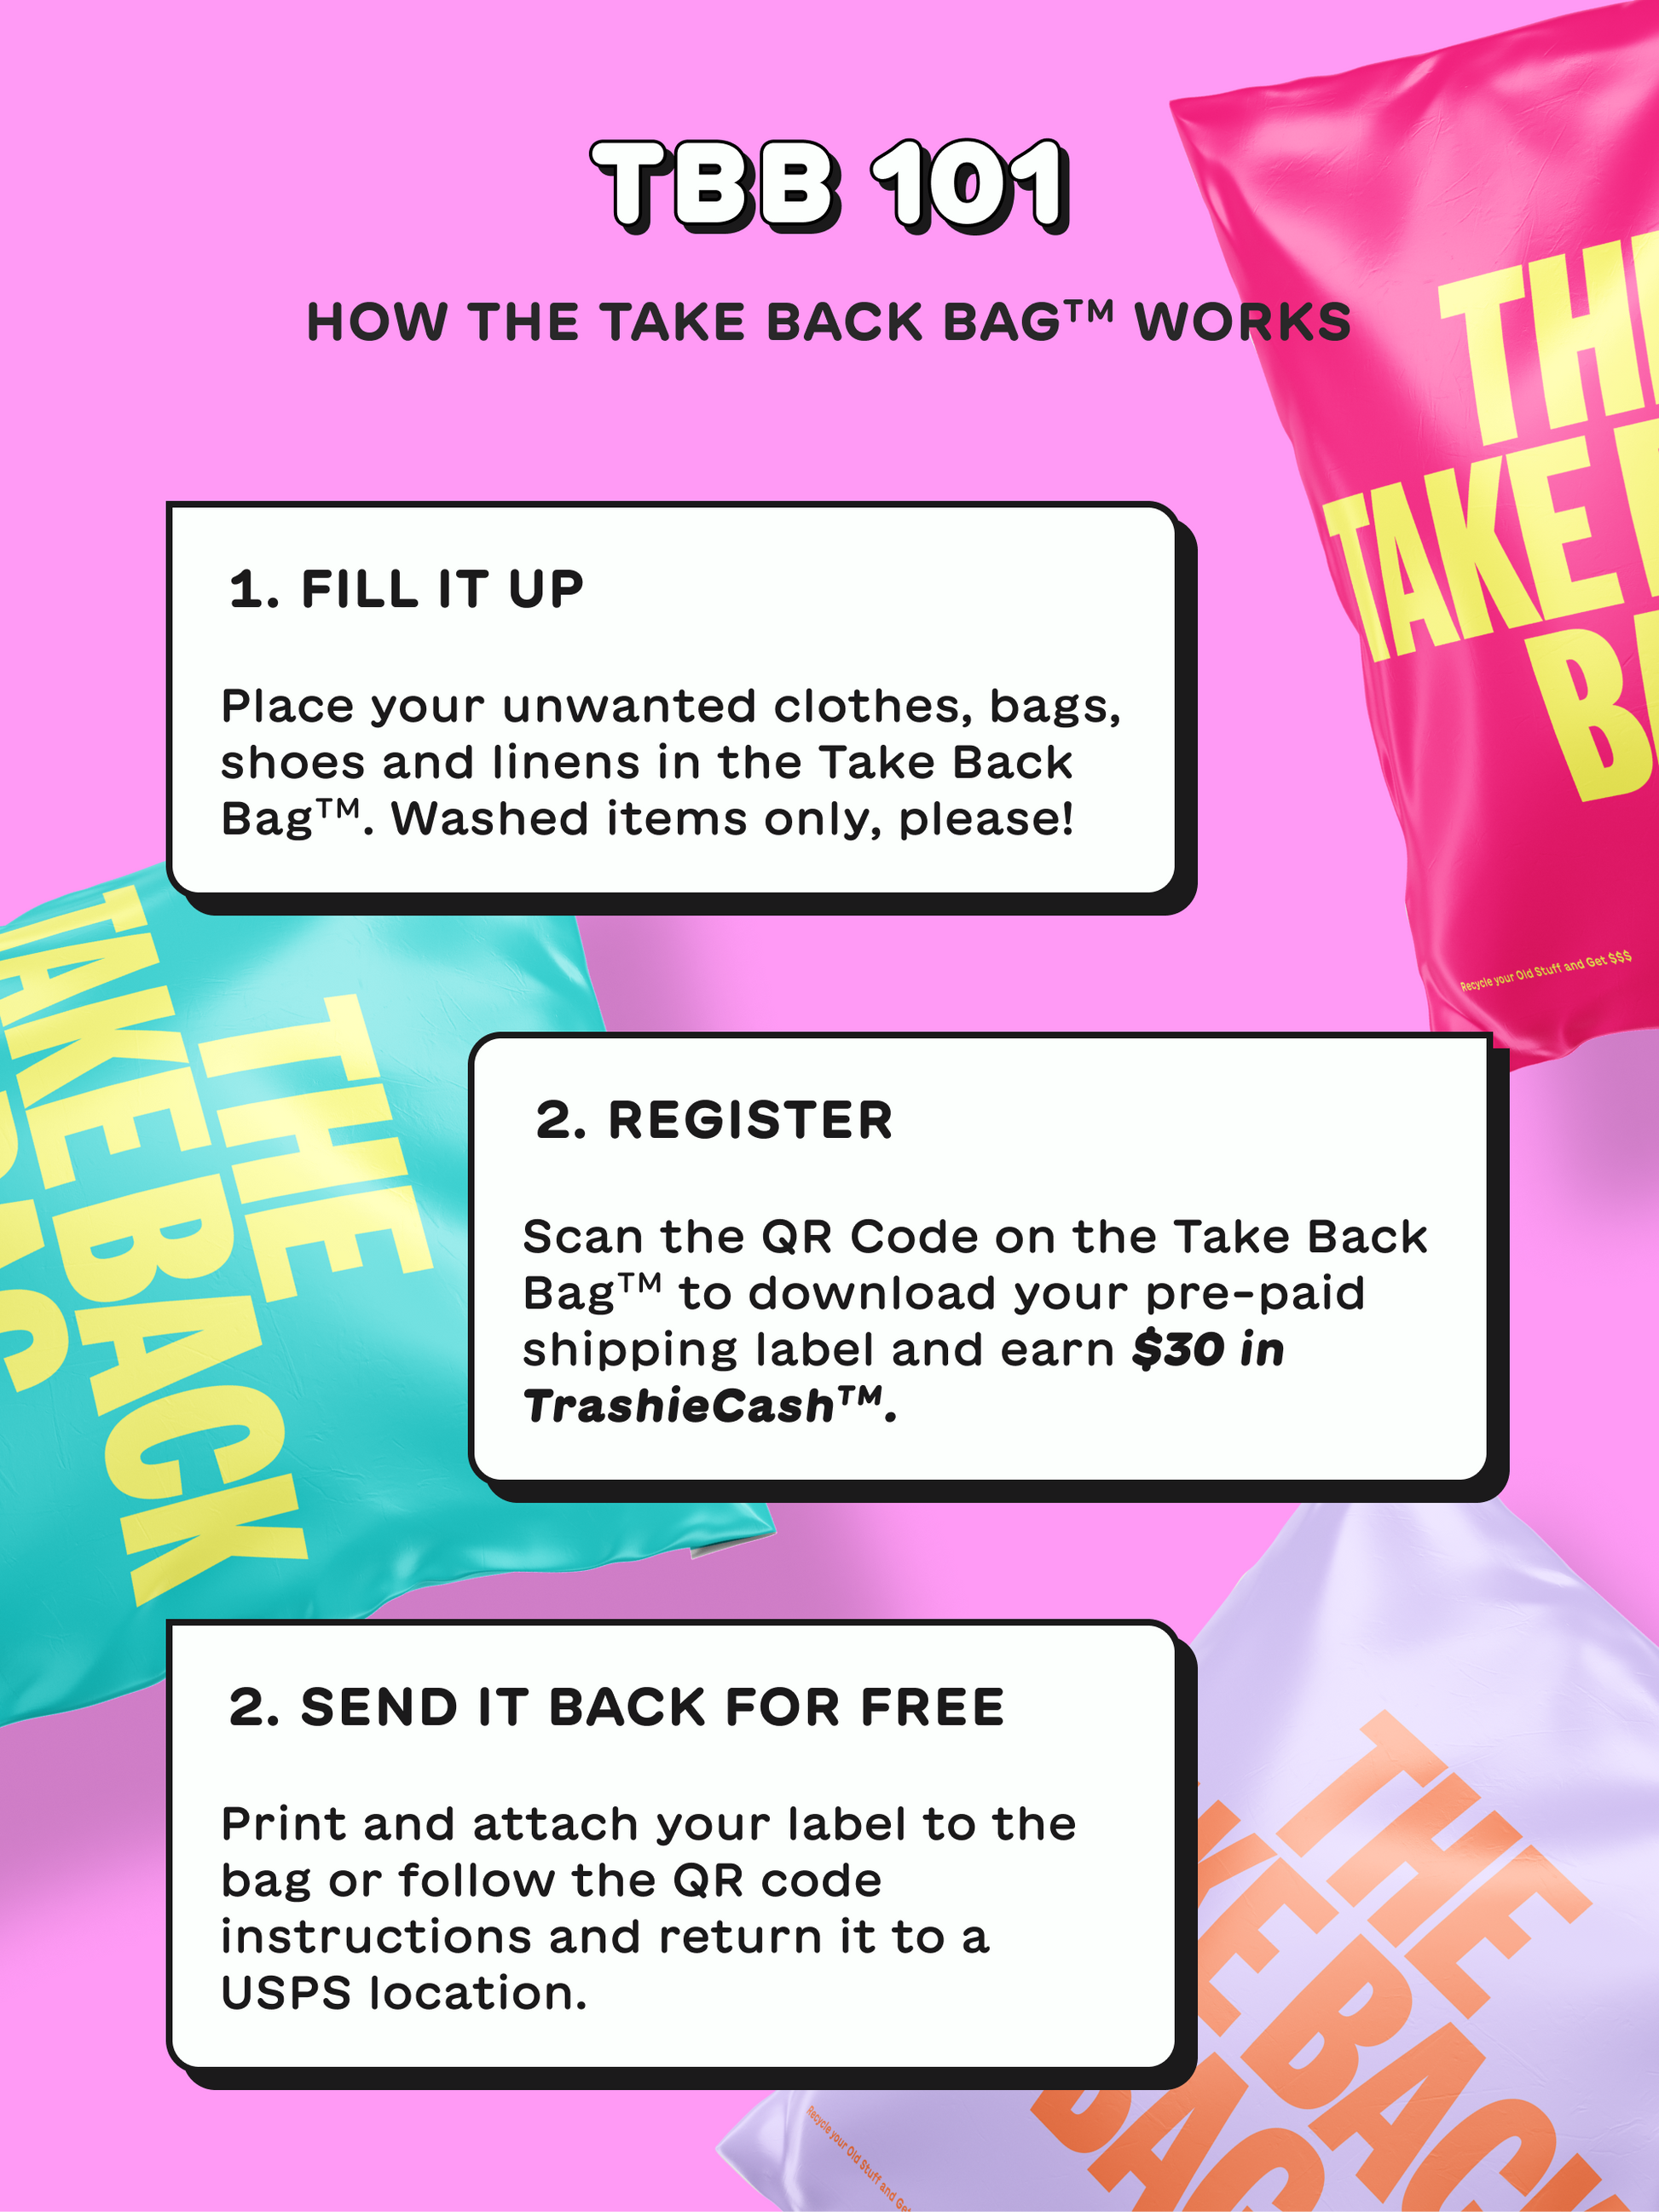 The Take Back Bag™